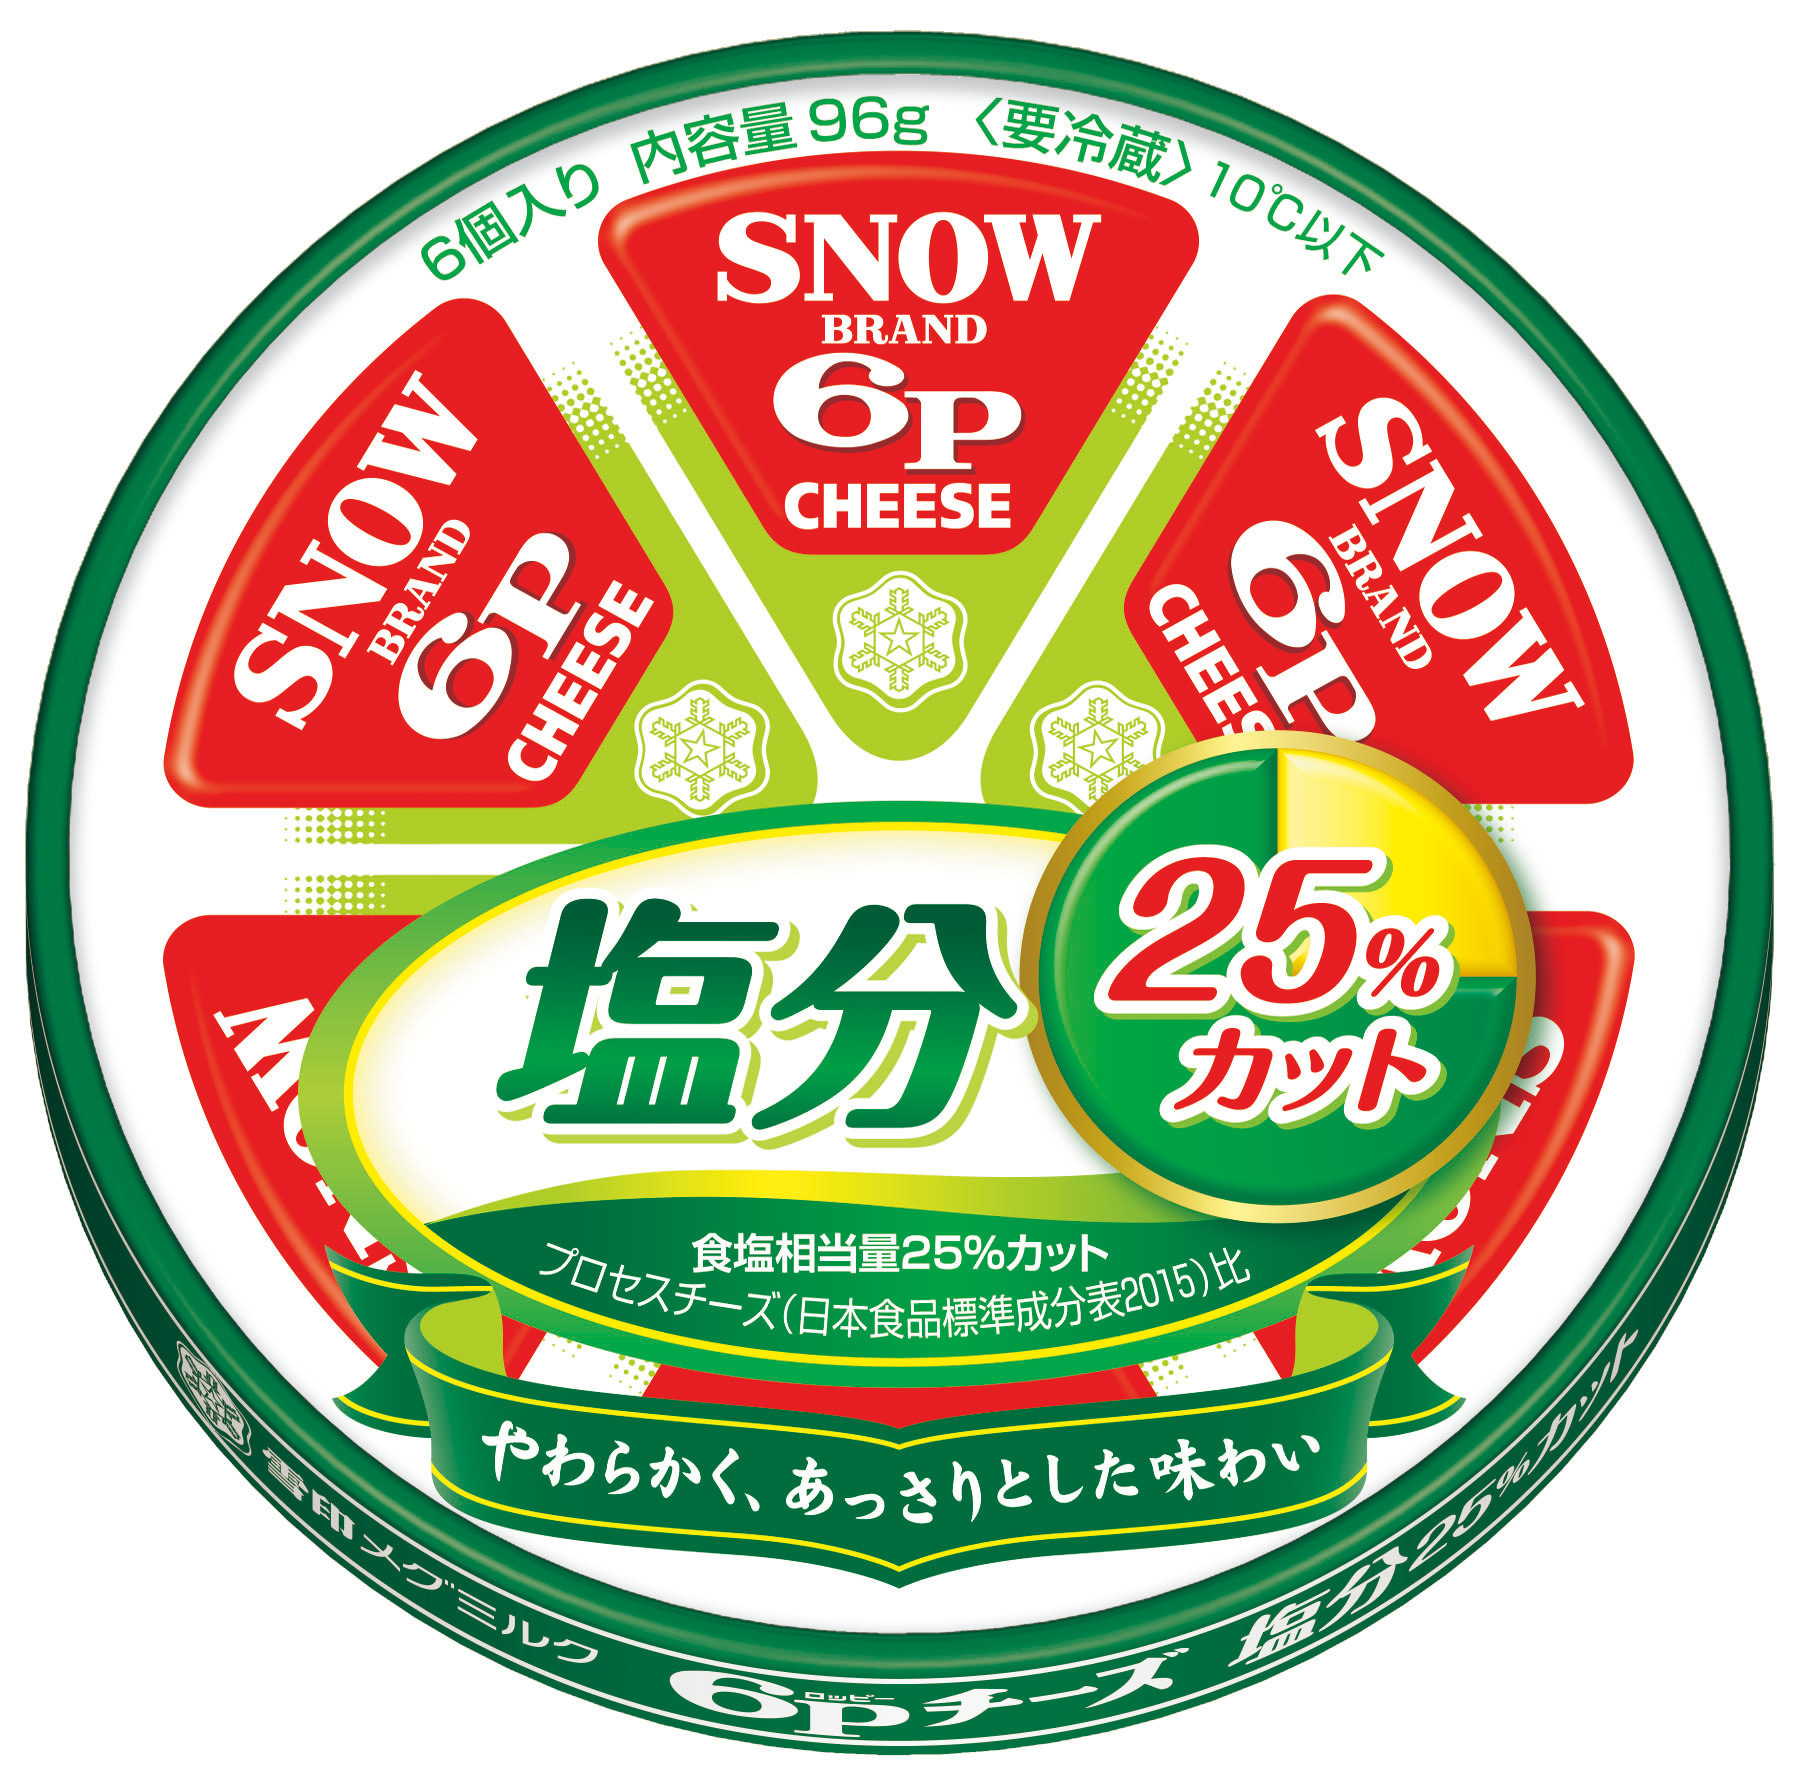 【雪印メグミルク】『６Ｐチーズ スモーク味』、『スモーク香る スライス』

2019年9月1日より全国にて新発売